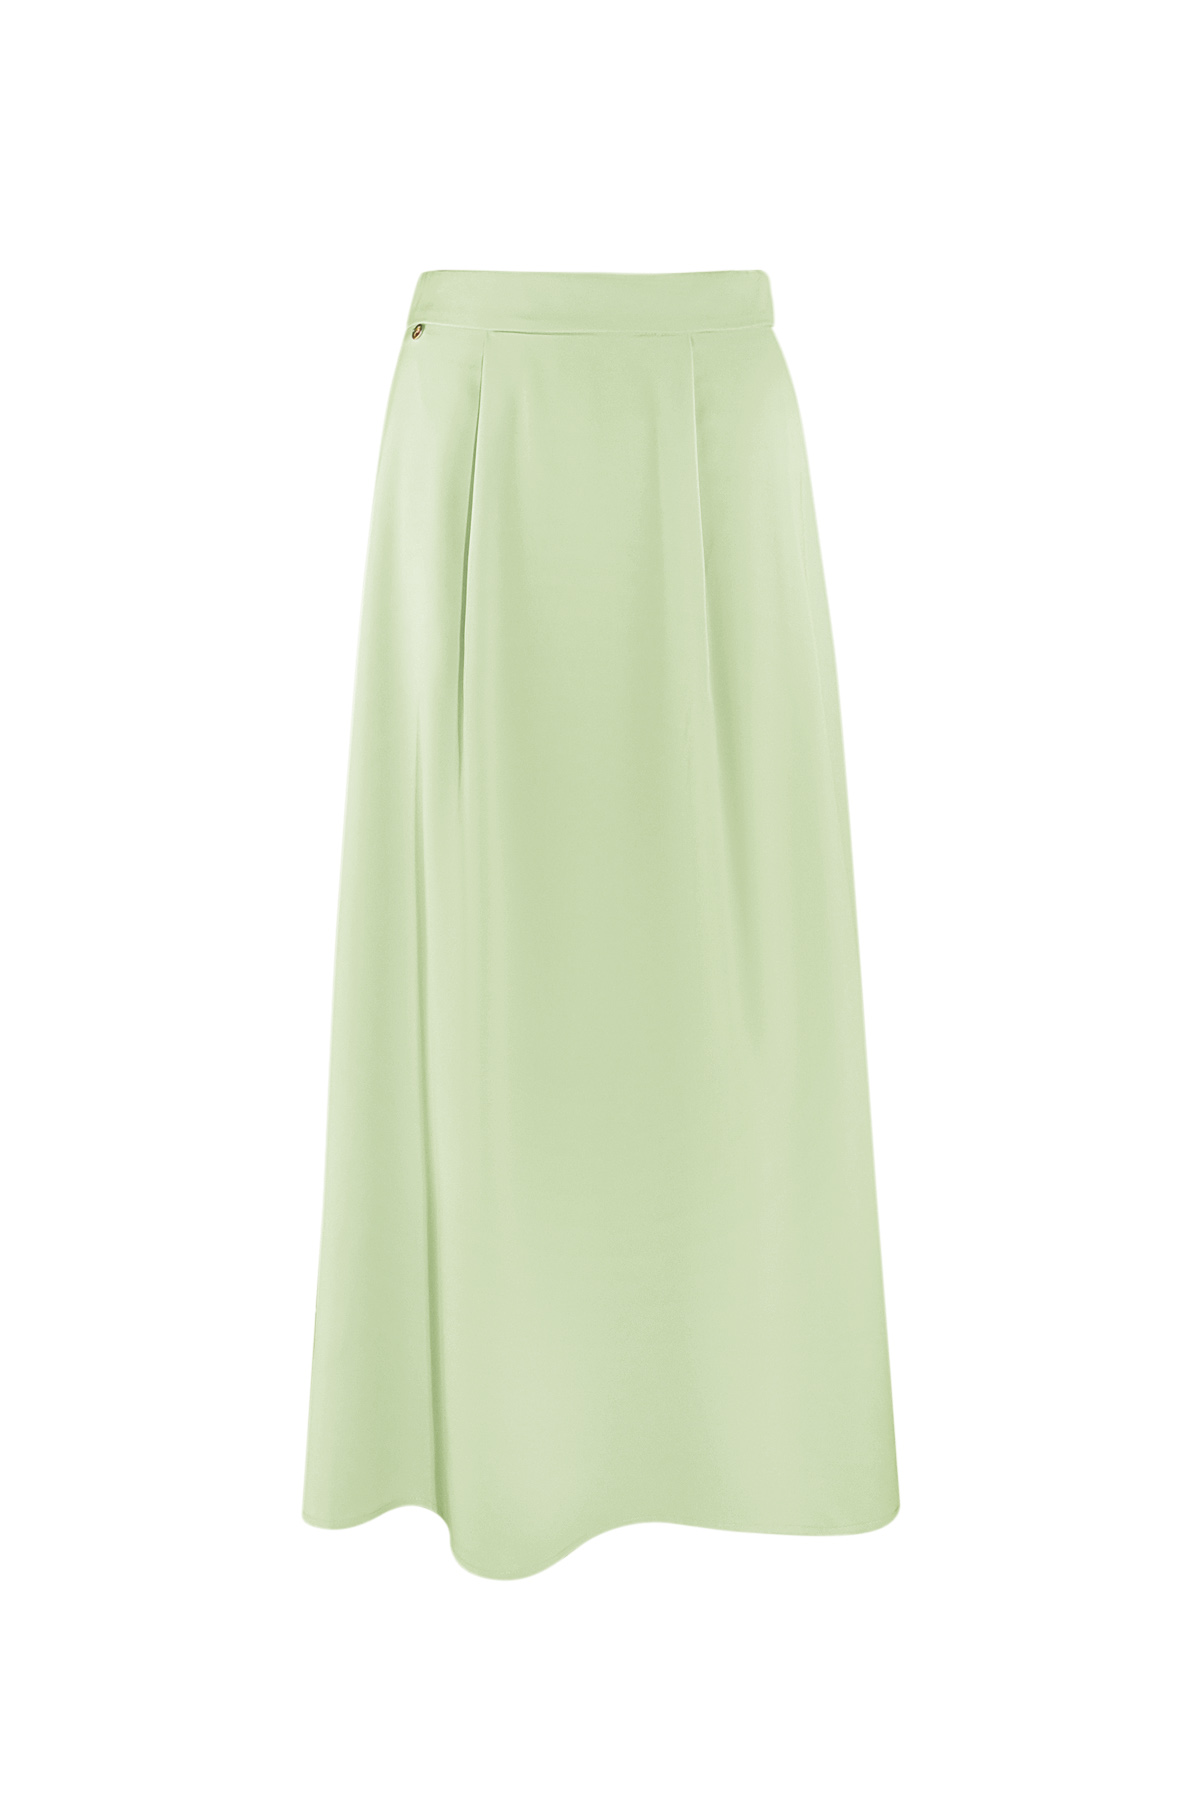 Long satin skirt - green